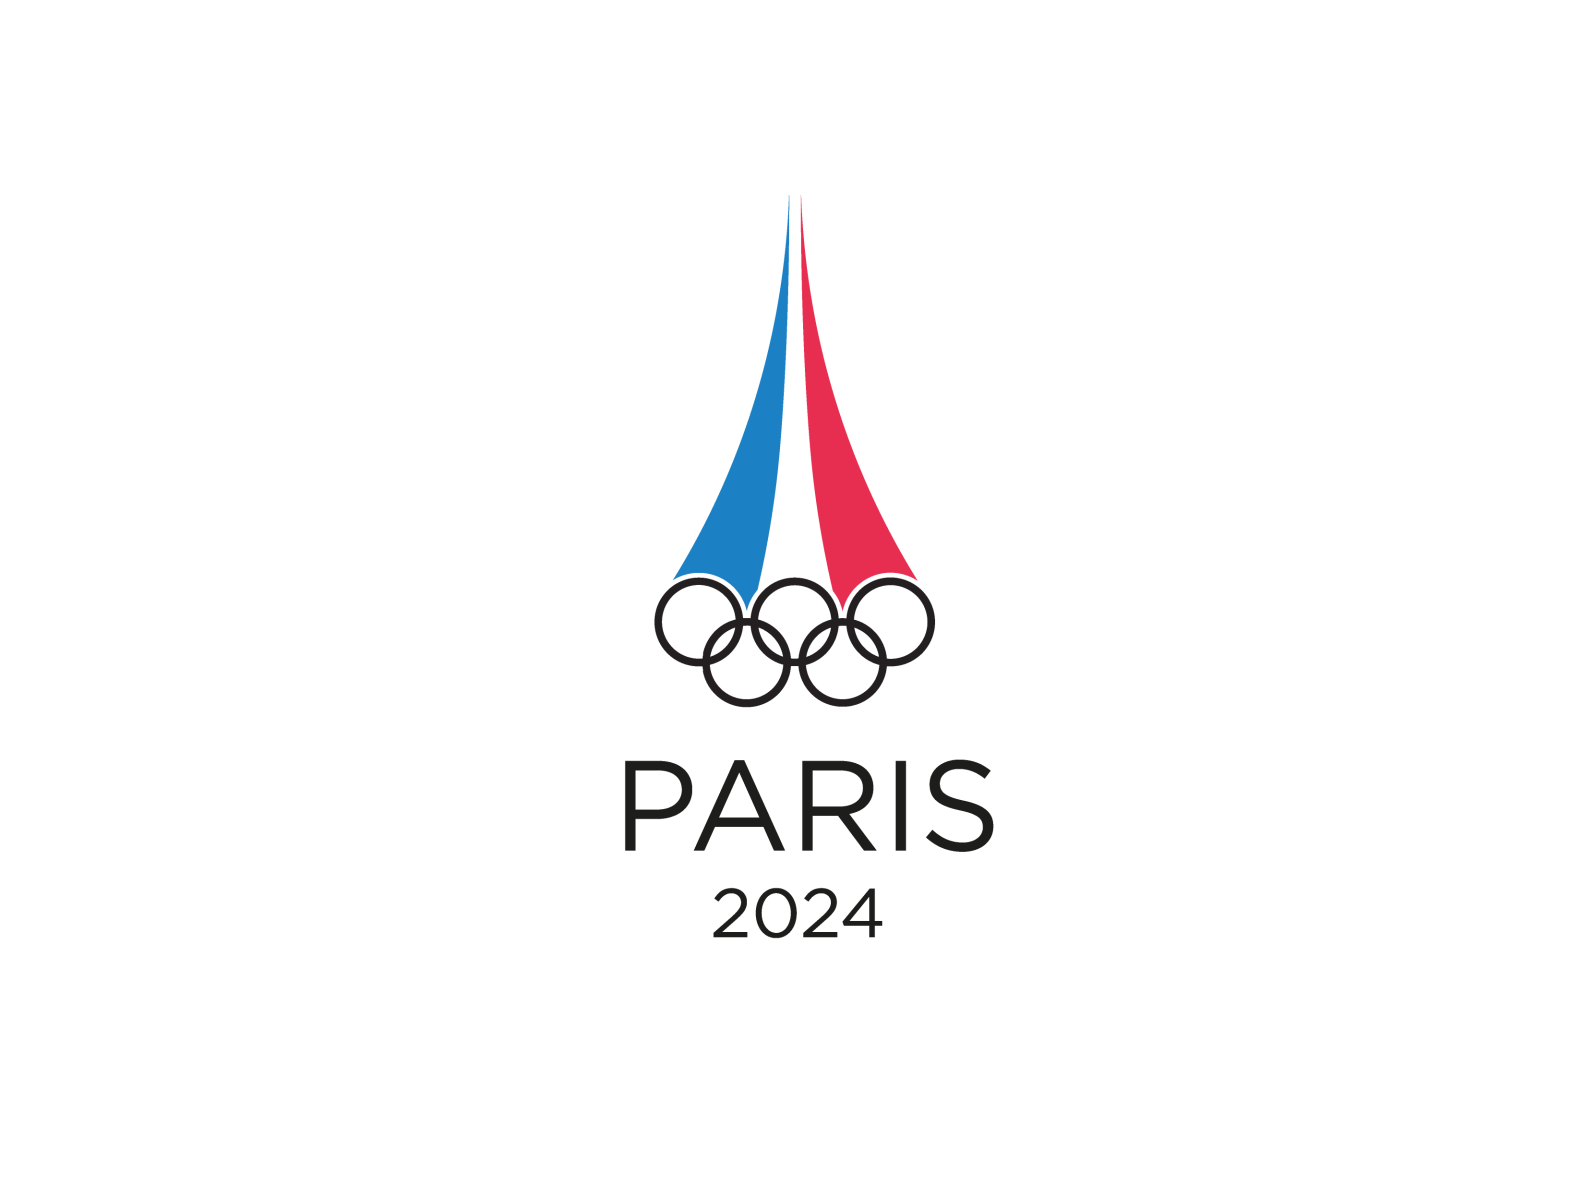 Олимпийские игры в Париже 2024. Paris 2024 логотип. Paris 2024 Olympics logo. Ааа игры 2024